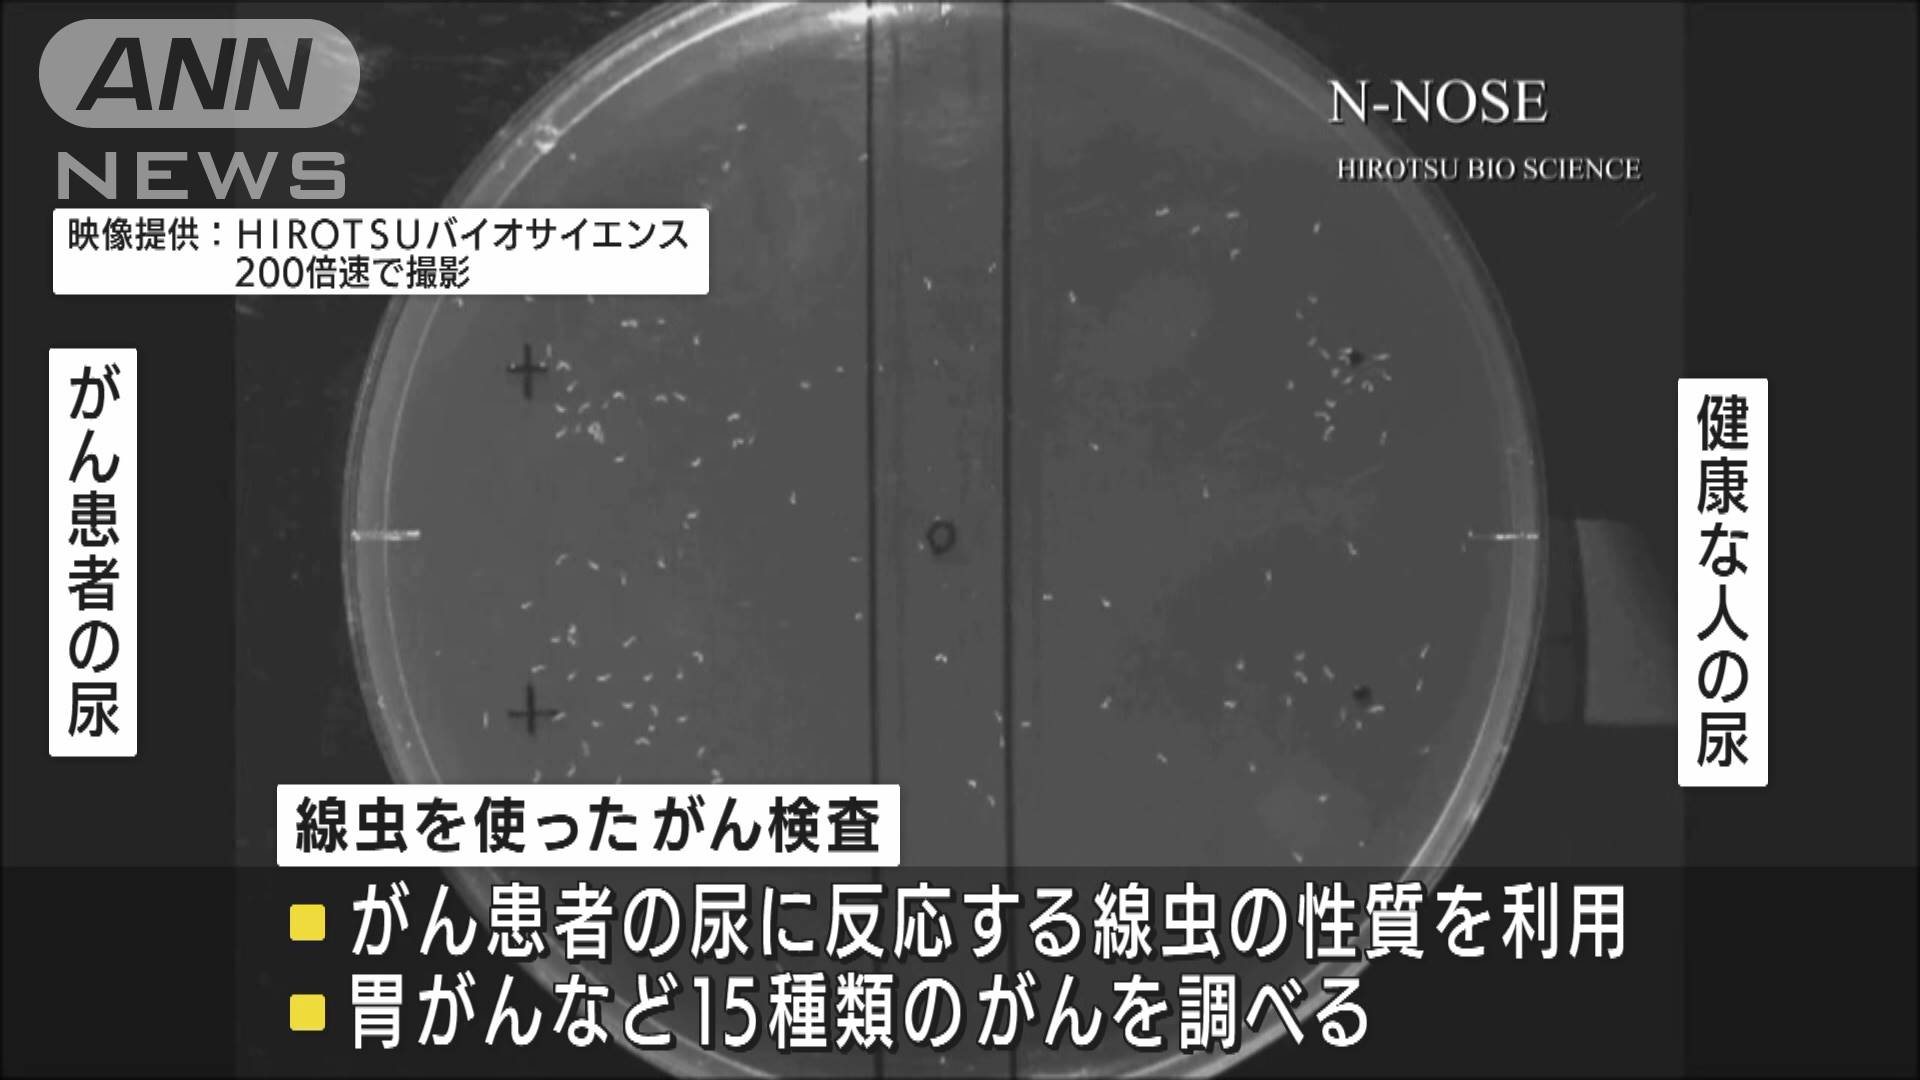 尿1滴で 線虫がん検査の拠点が新宿にオープン テレ朝news テレビ朝日のニュースサイト